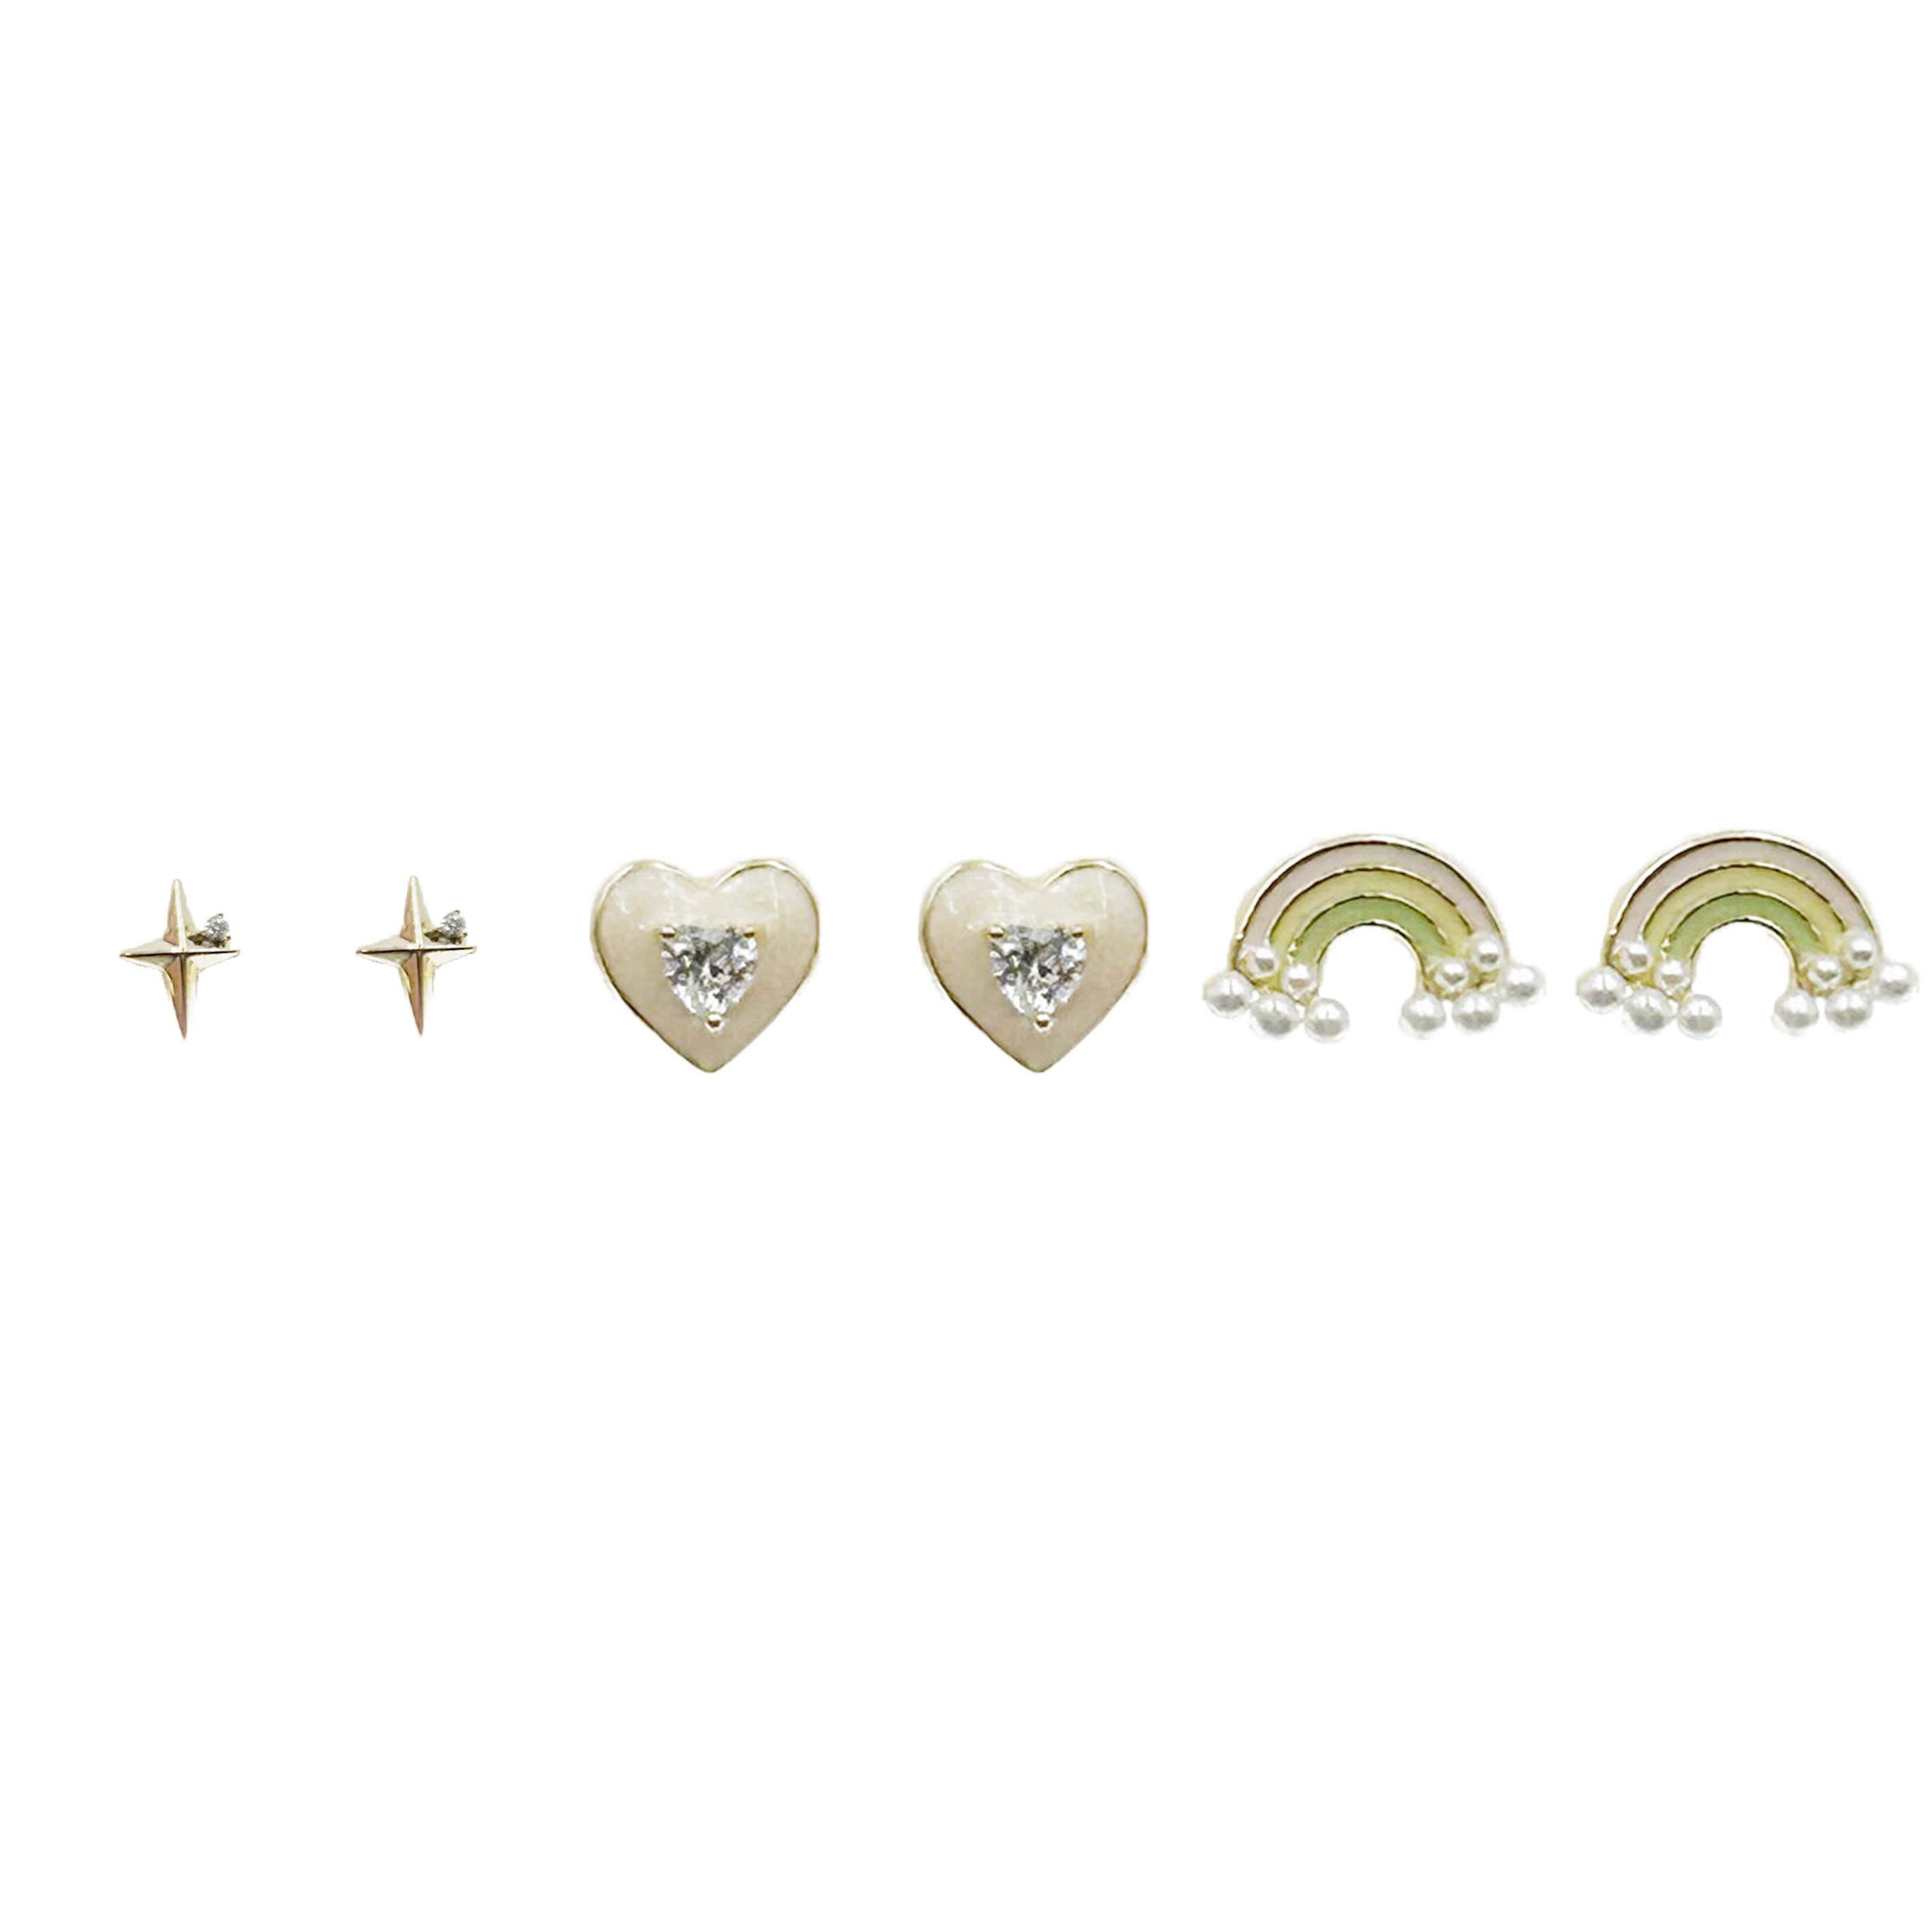 韓國 金屬 水鑽 珍珠 星芒 愛心 彩虹 一卡六入 造型 耳針式耳環